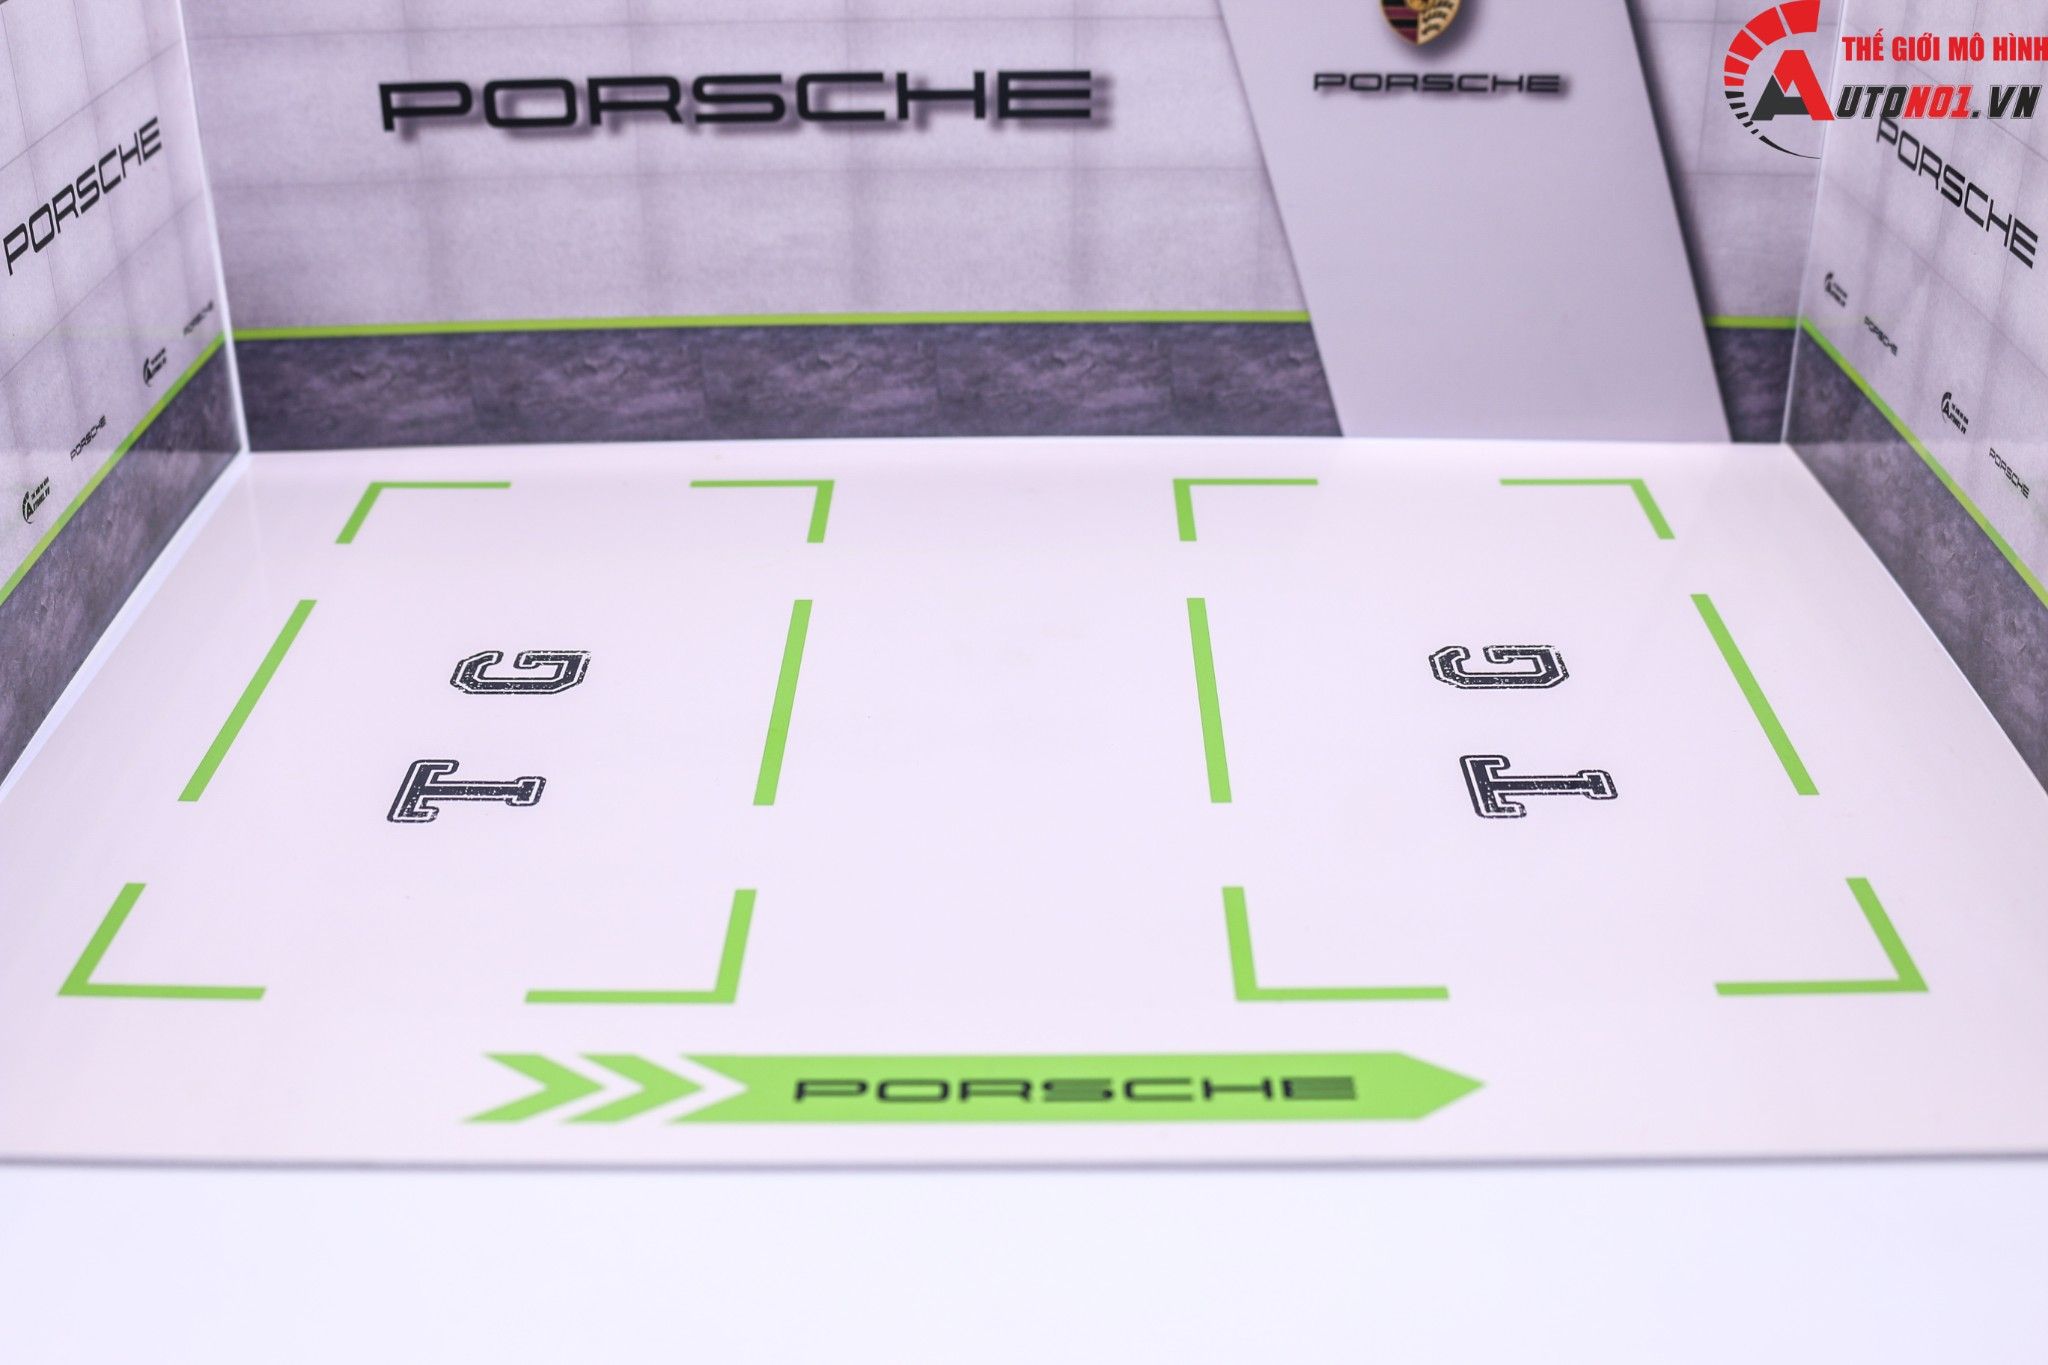  Diorama 1:24 Showroom trưng bày Porsche cho xe tỉ lệ 1:24 kích thước 35X25X15cm 4 tấm lắp ghép formex 5li DR010C 